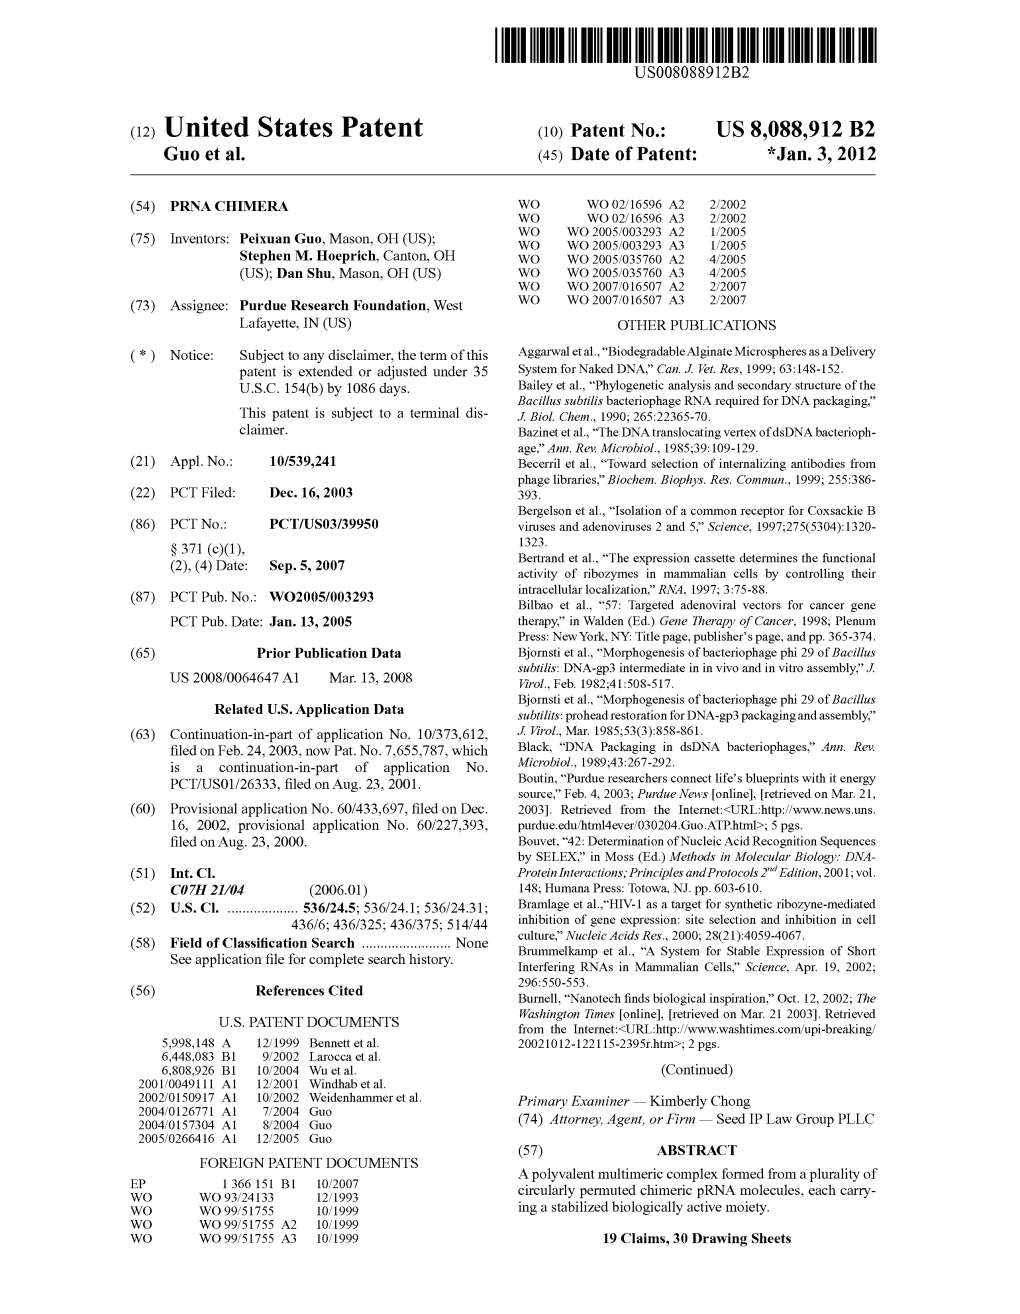 (12) United States Patent (10) Patent No.: US 8,088,912 B2 Guo Et Al